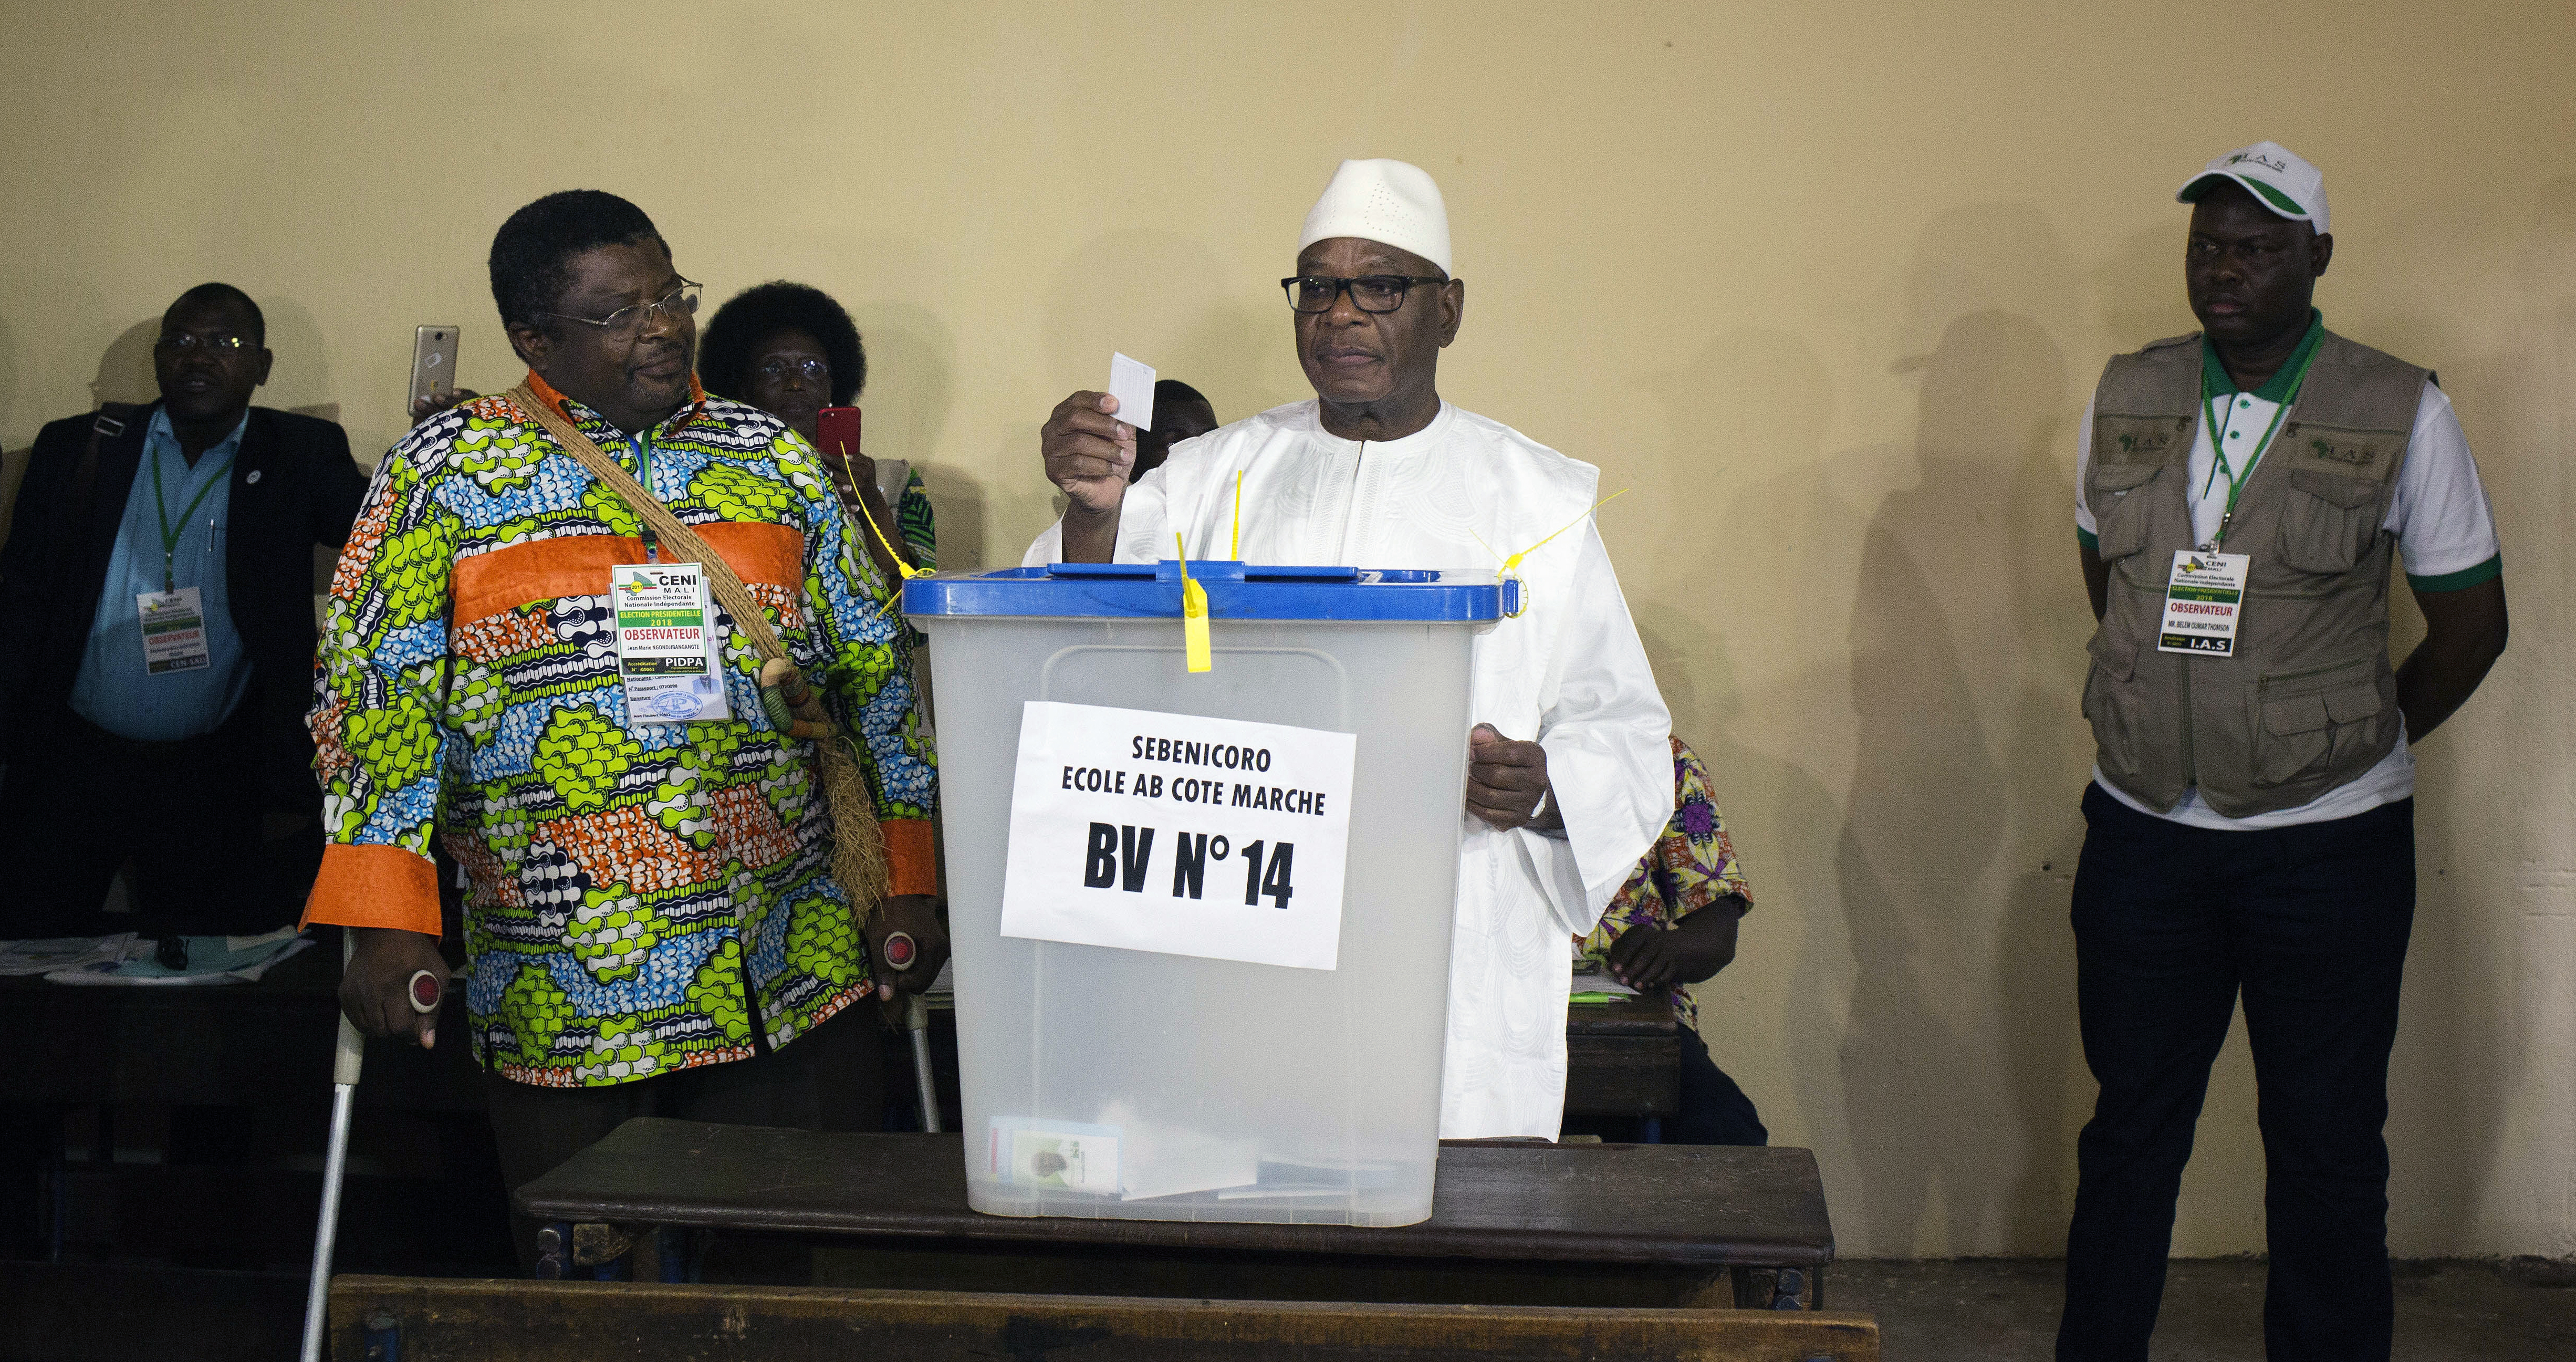 Ibrahim Boubacar Keita casts his ballot